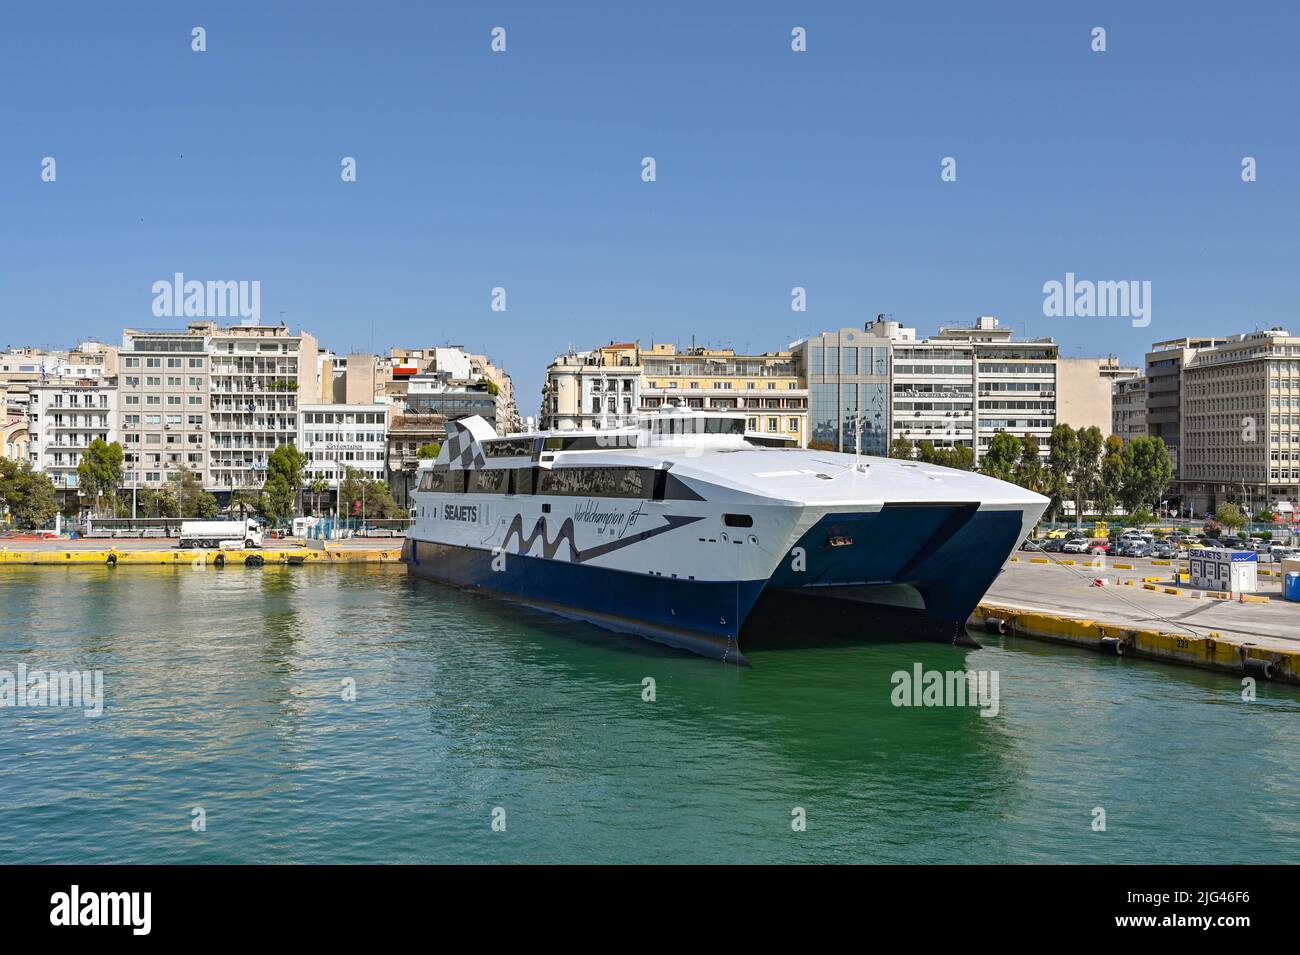 Atene, Grecia - Maggio 2022: Traghetto ad alta velocità Twin Hull campione del mondo Jet ormeggiato nel porto del Pireo dopo essere arrivato da una delle isole greche. Foto Stock